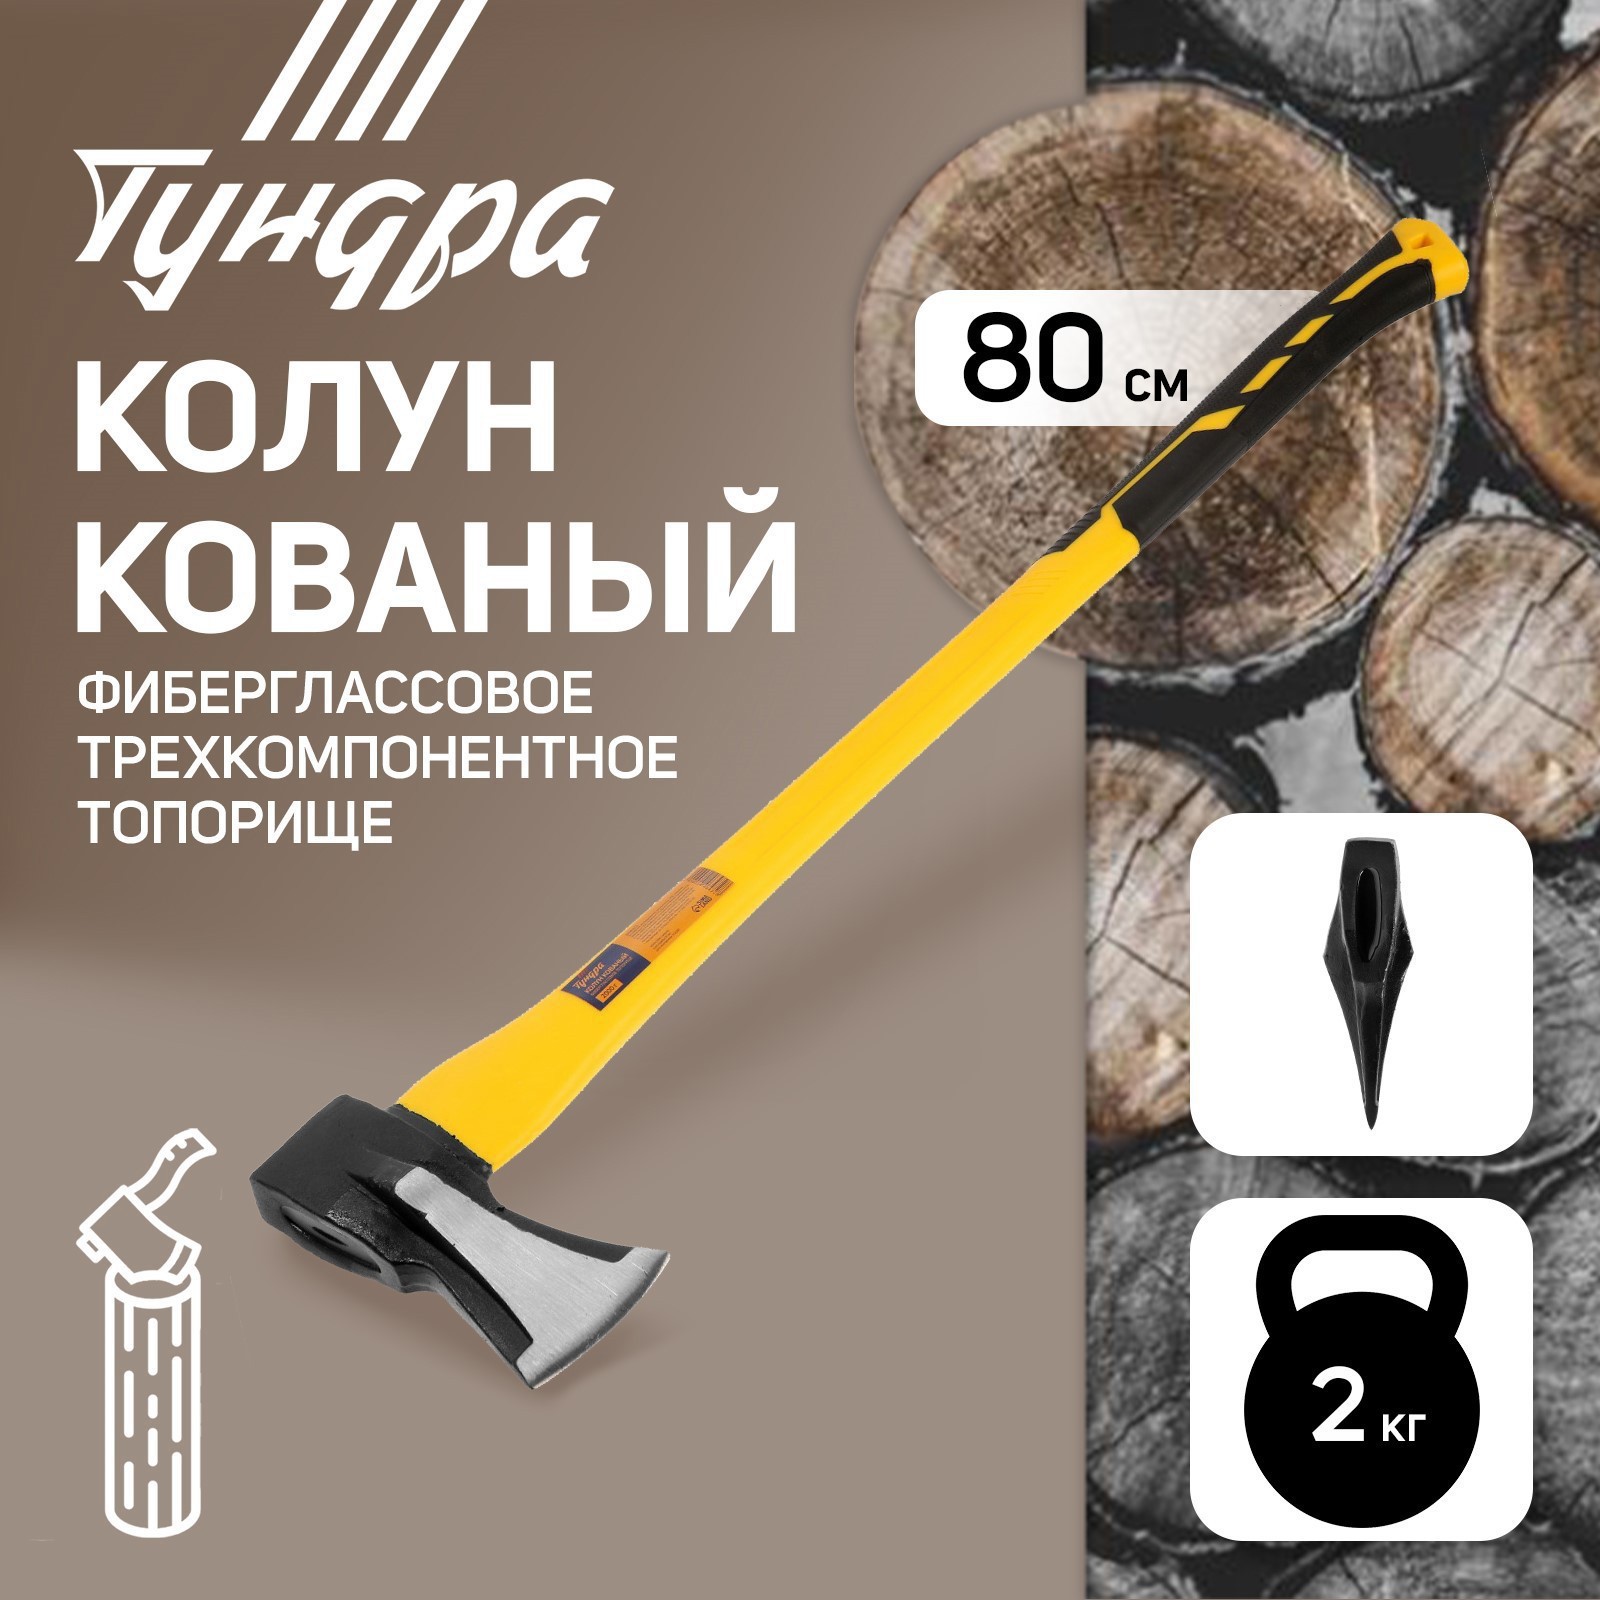  кованый Тундра клиновидная форма топорище 80 см 2 кг в Казани .